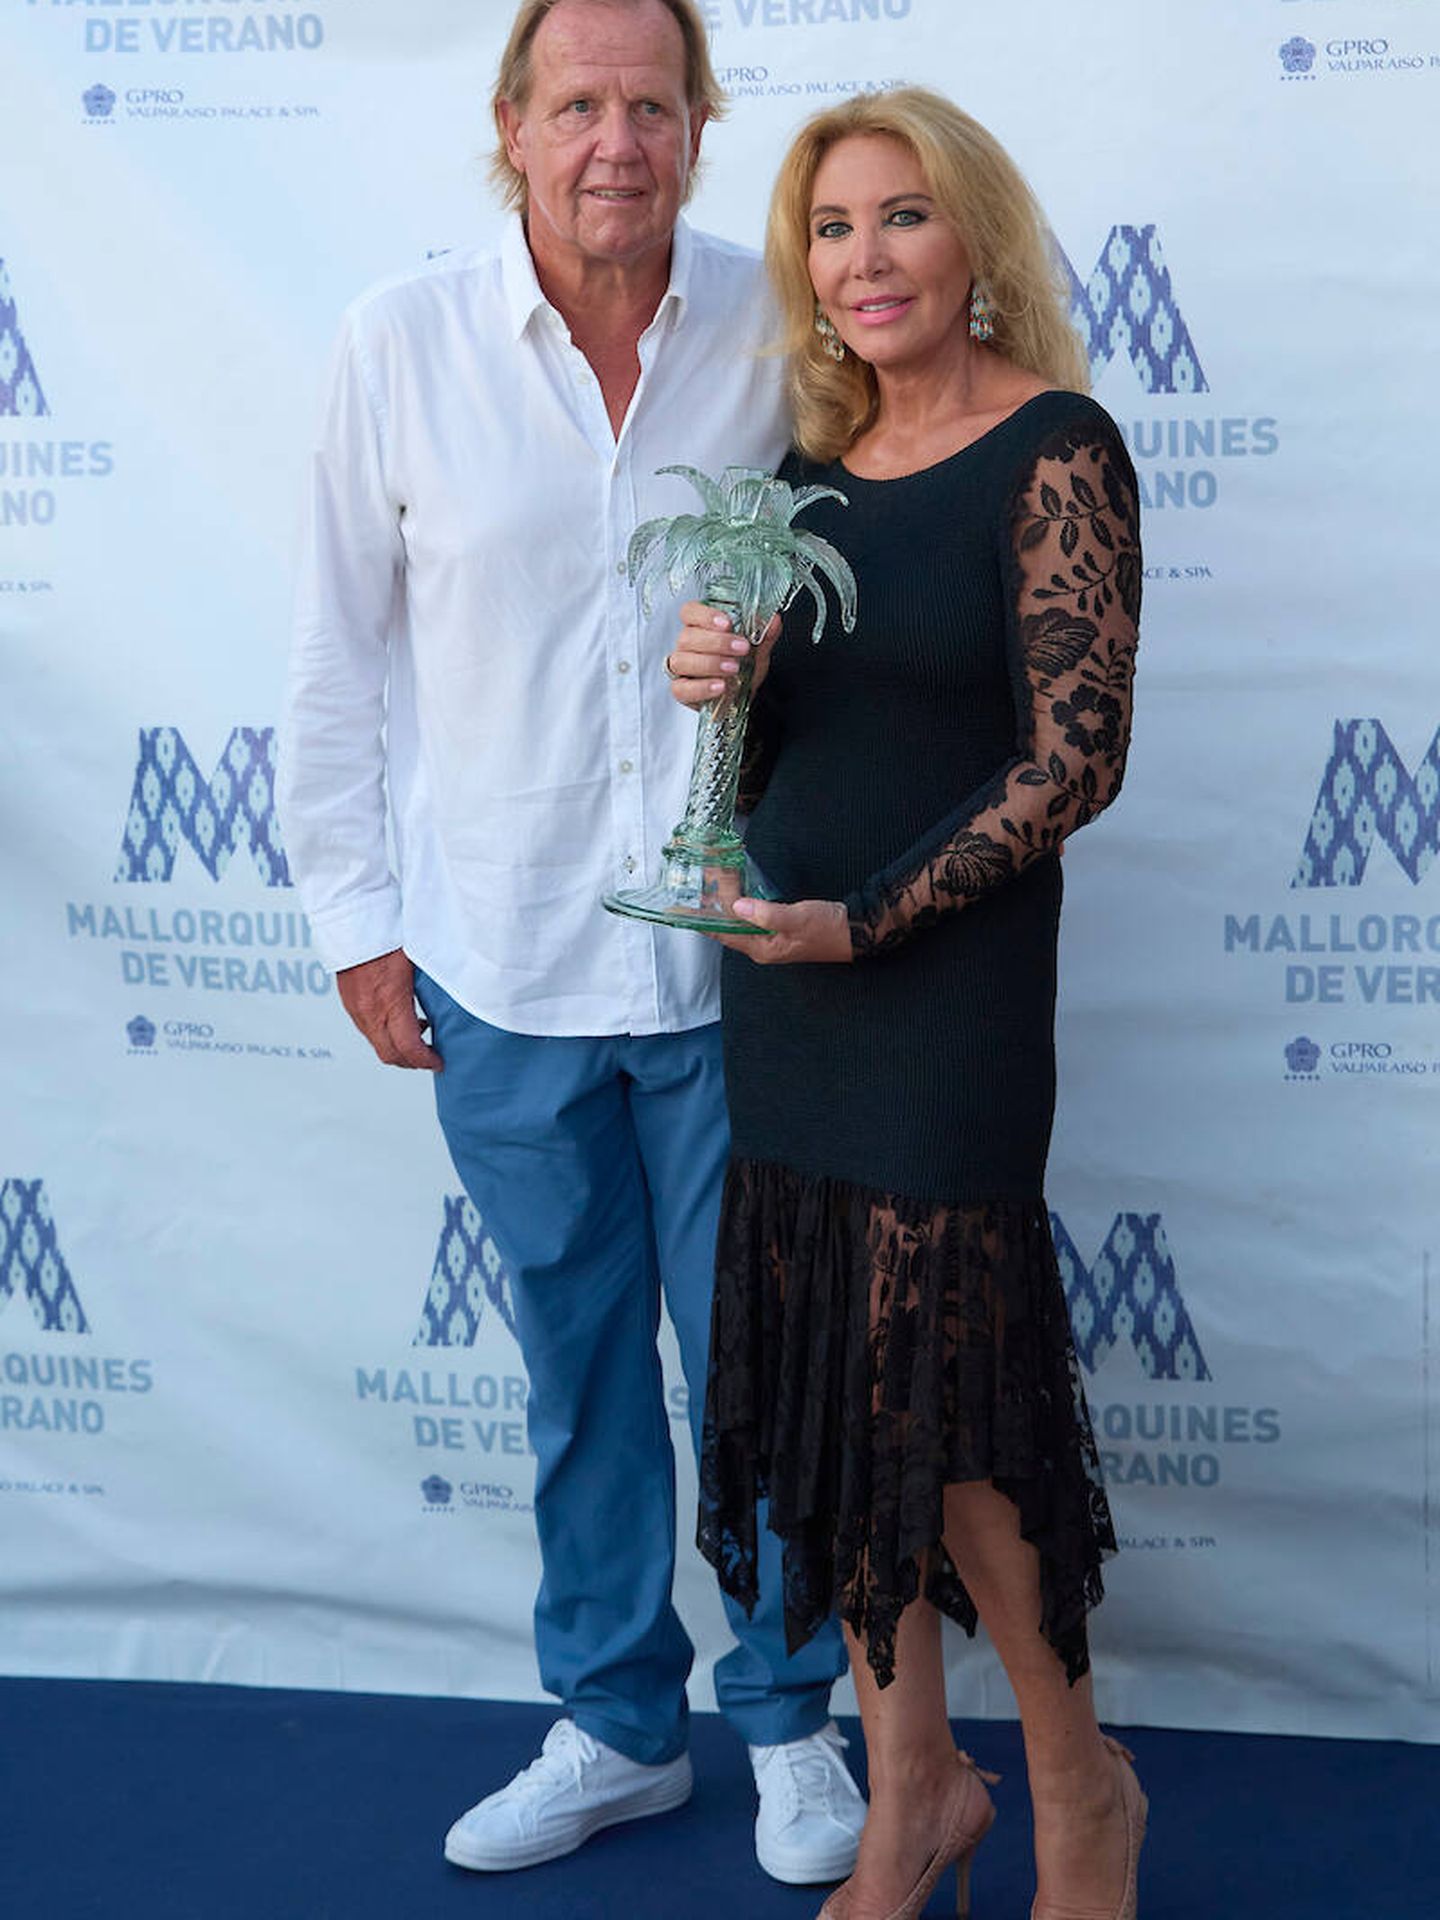 Norma Duval junto a su pareja, Matthias Khün, recibiendo el premio ’ Mallorquín Del Verano' 2021. (Limited Pictures)